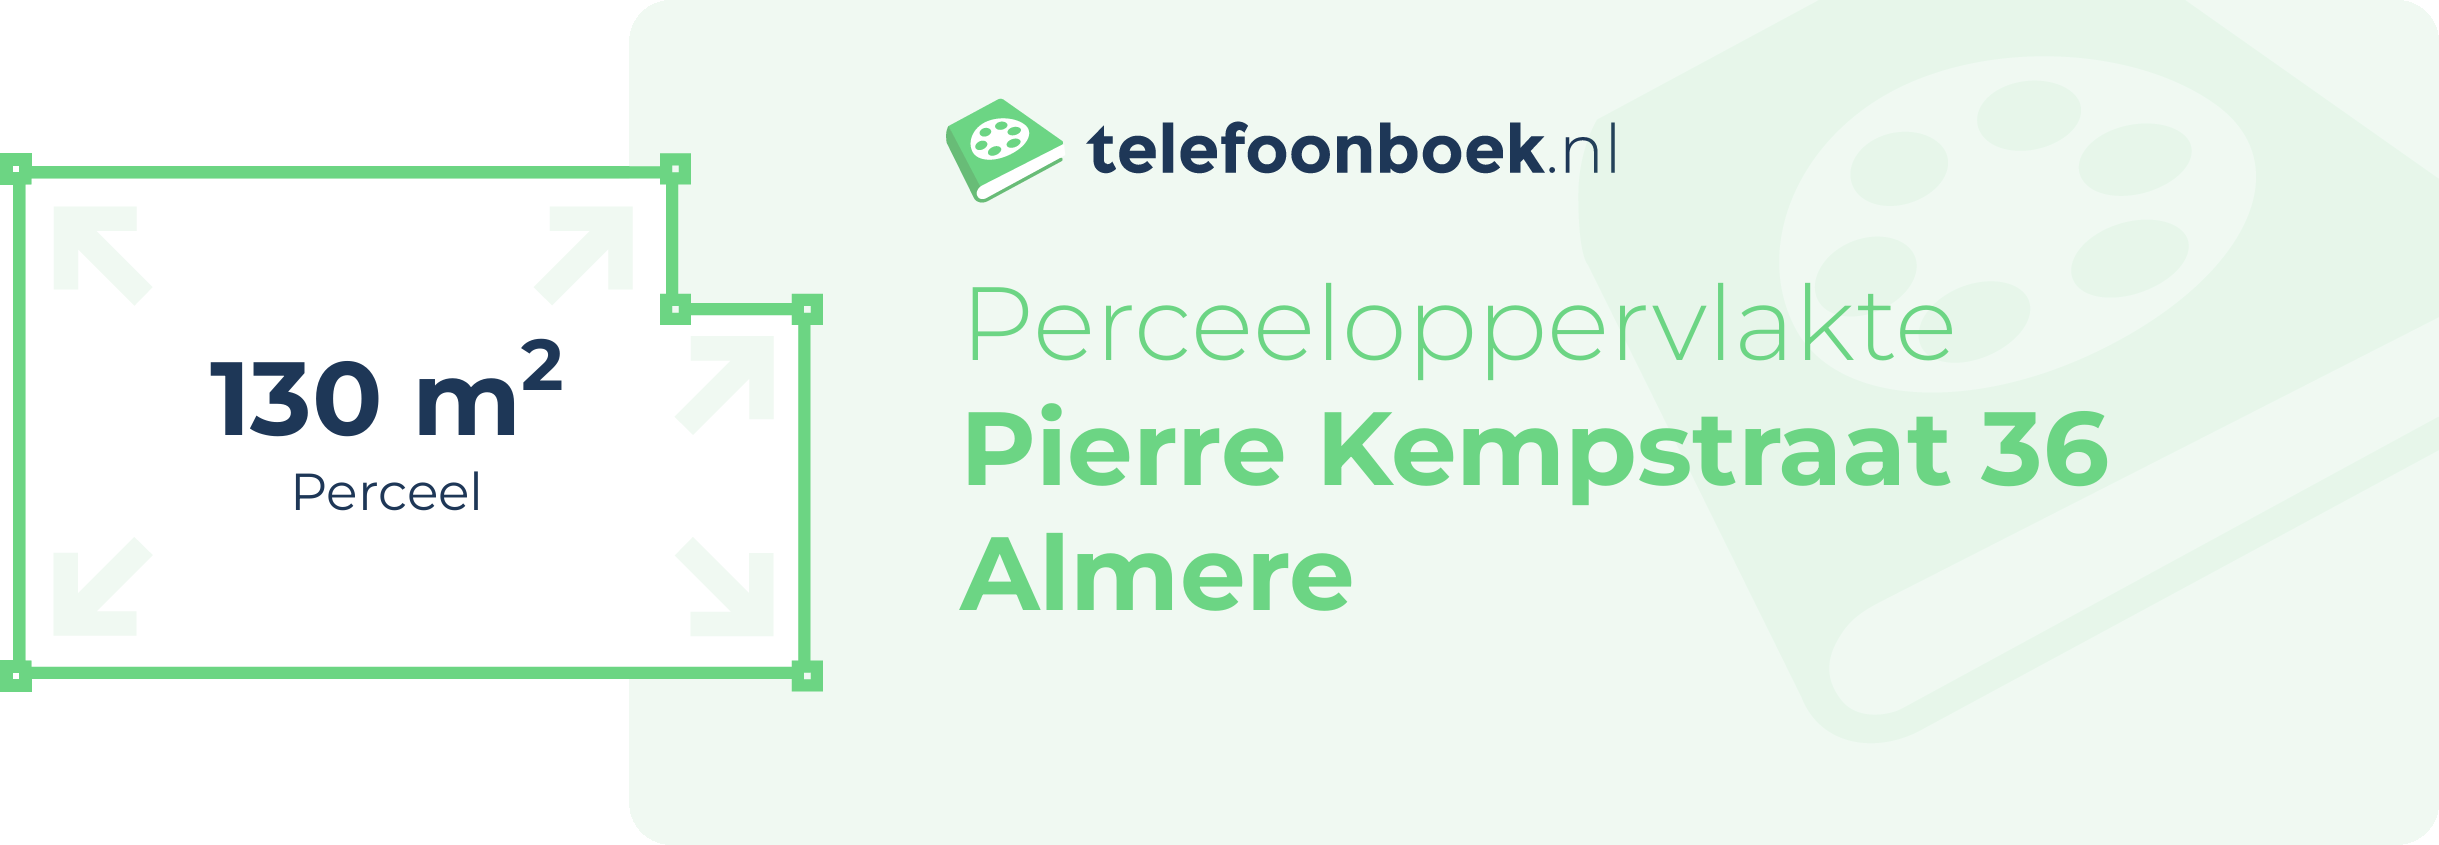 Perceeloppervlakte Pierre Kempstraat 36 Almere